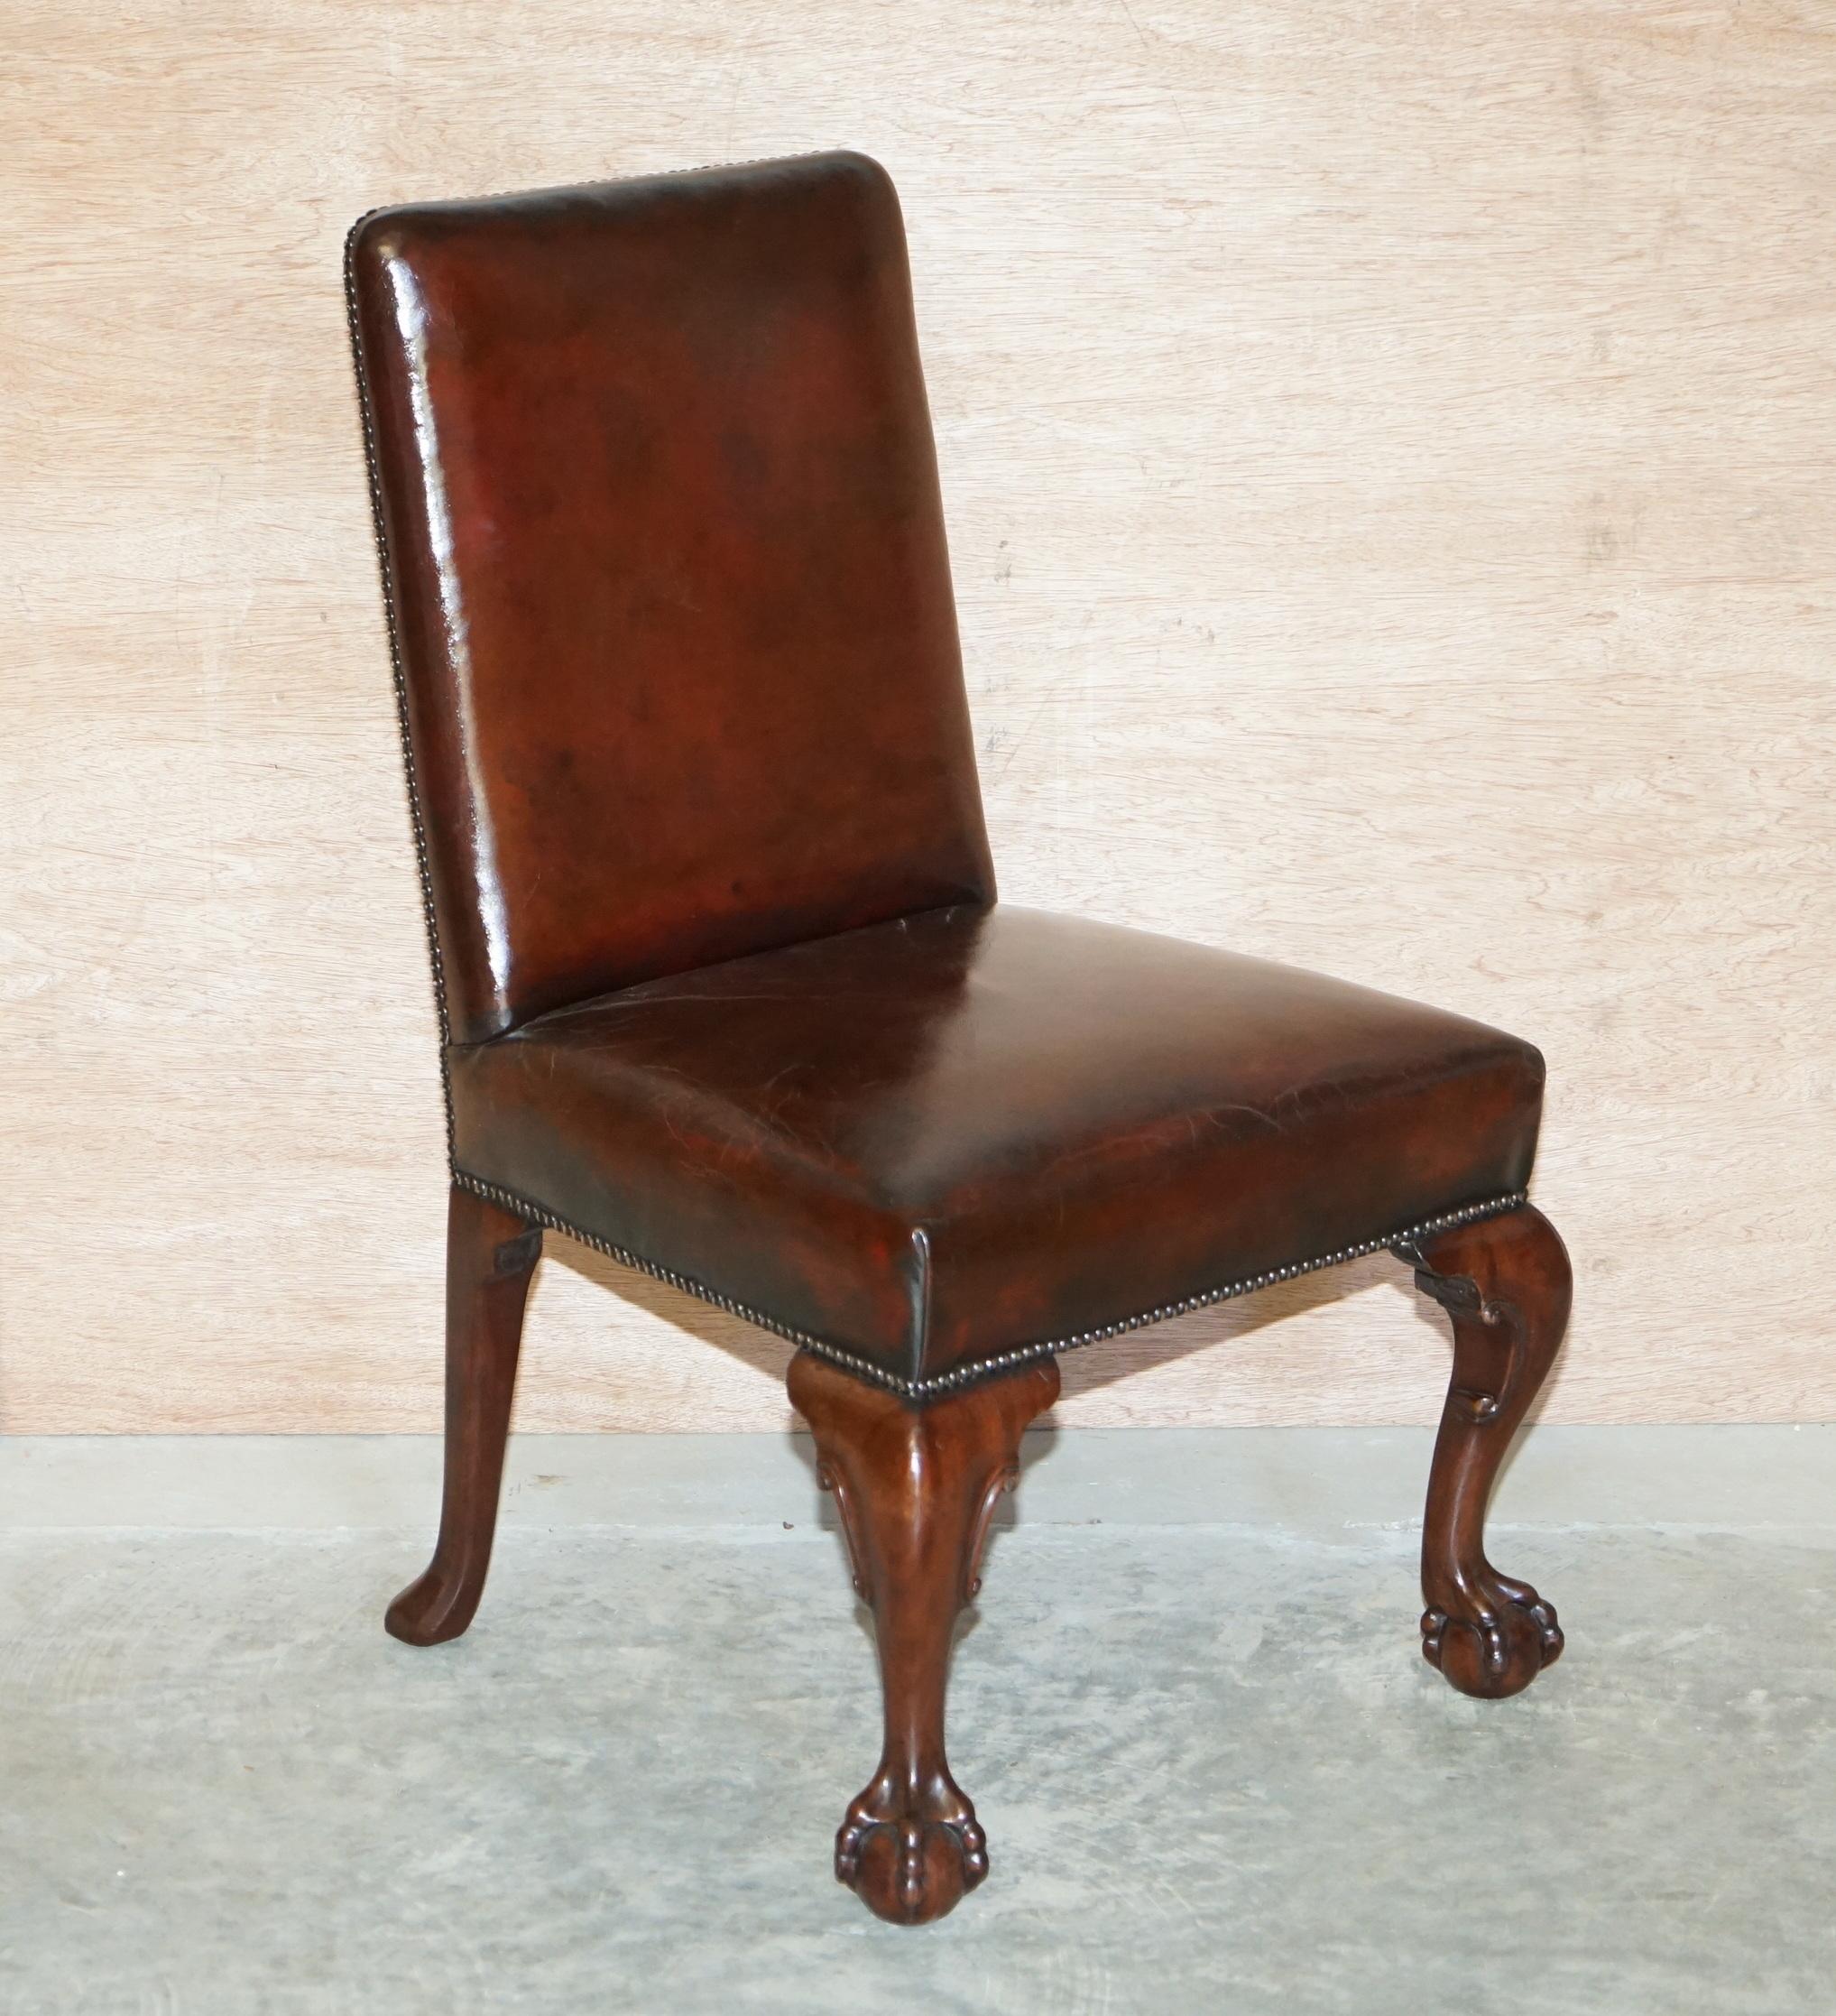 Nous sommes ravis de vous présenter ce superbe ensemble de six chaises de salle à manger entièrement restaurées, datant du début de l'époque victorienne, vers 1840, en acajou encadré de cuir marron.

Il s'agit d'un ensemble de chaises très